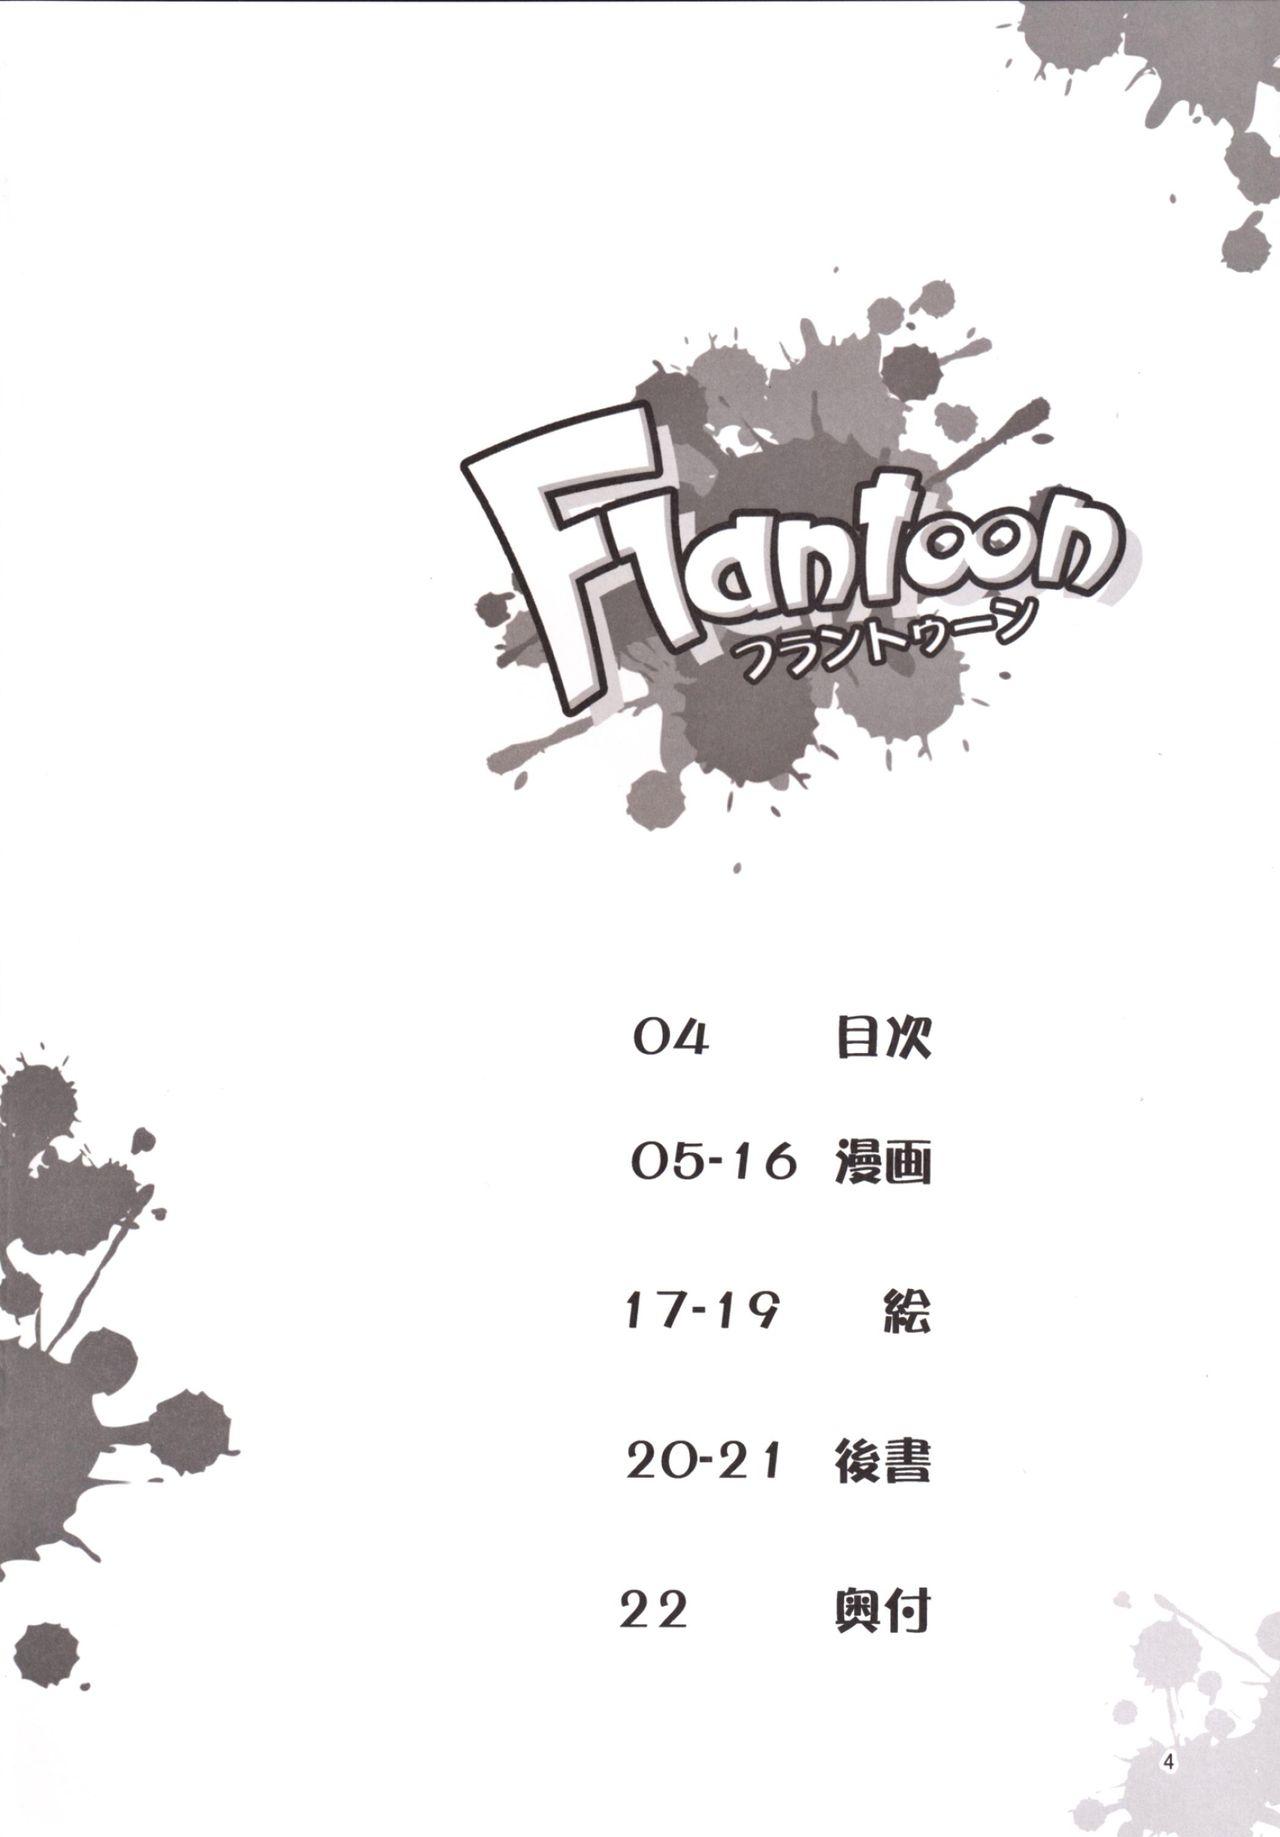 Flantoon! 3